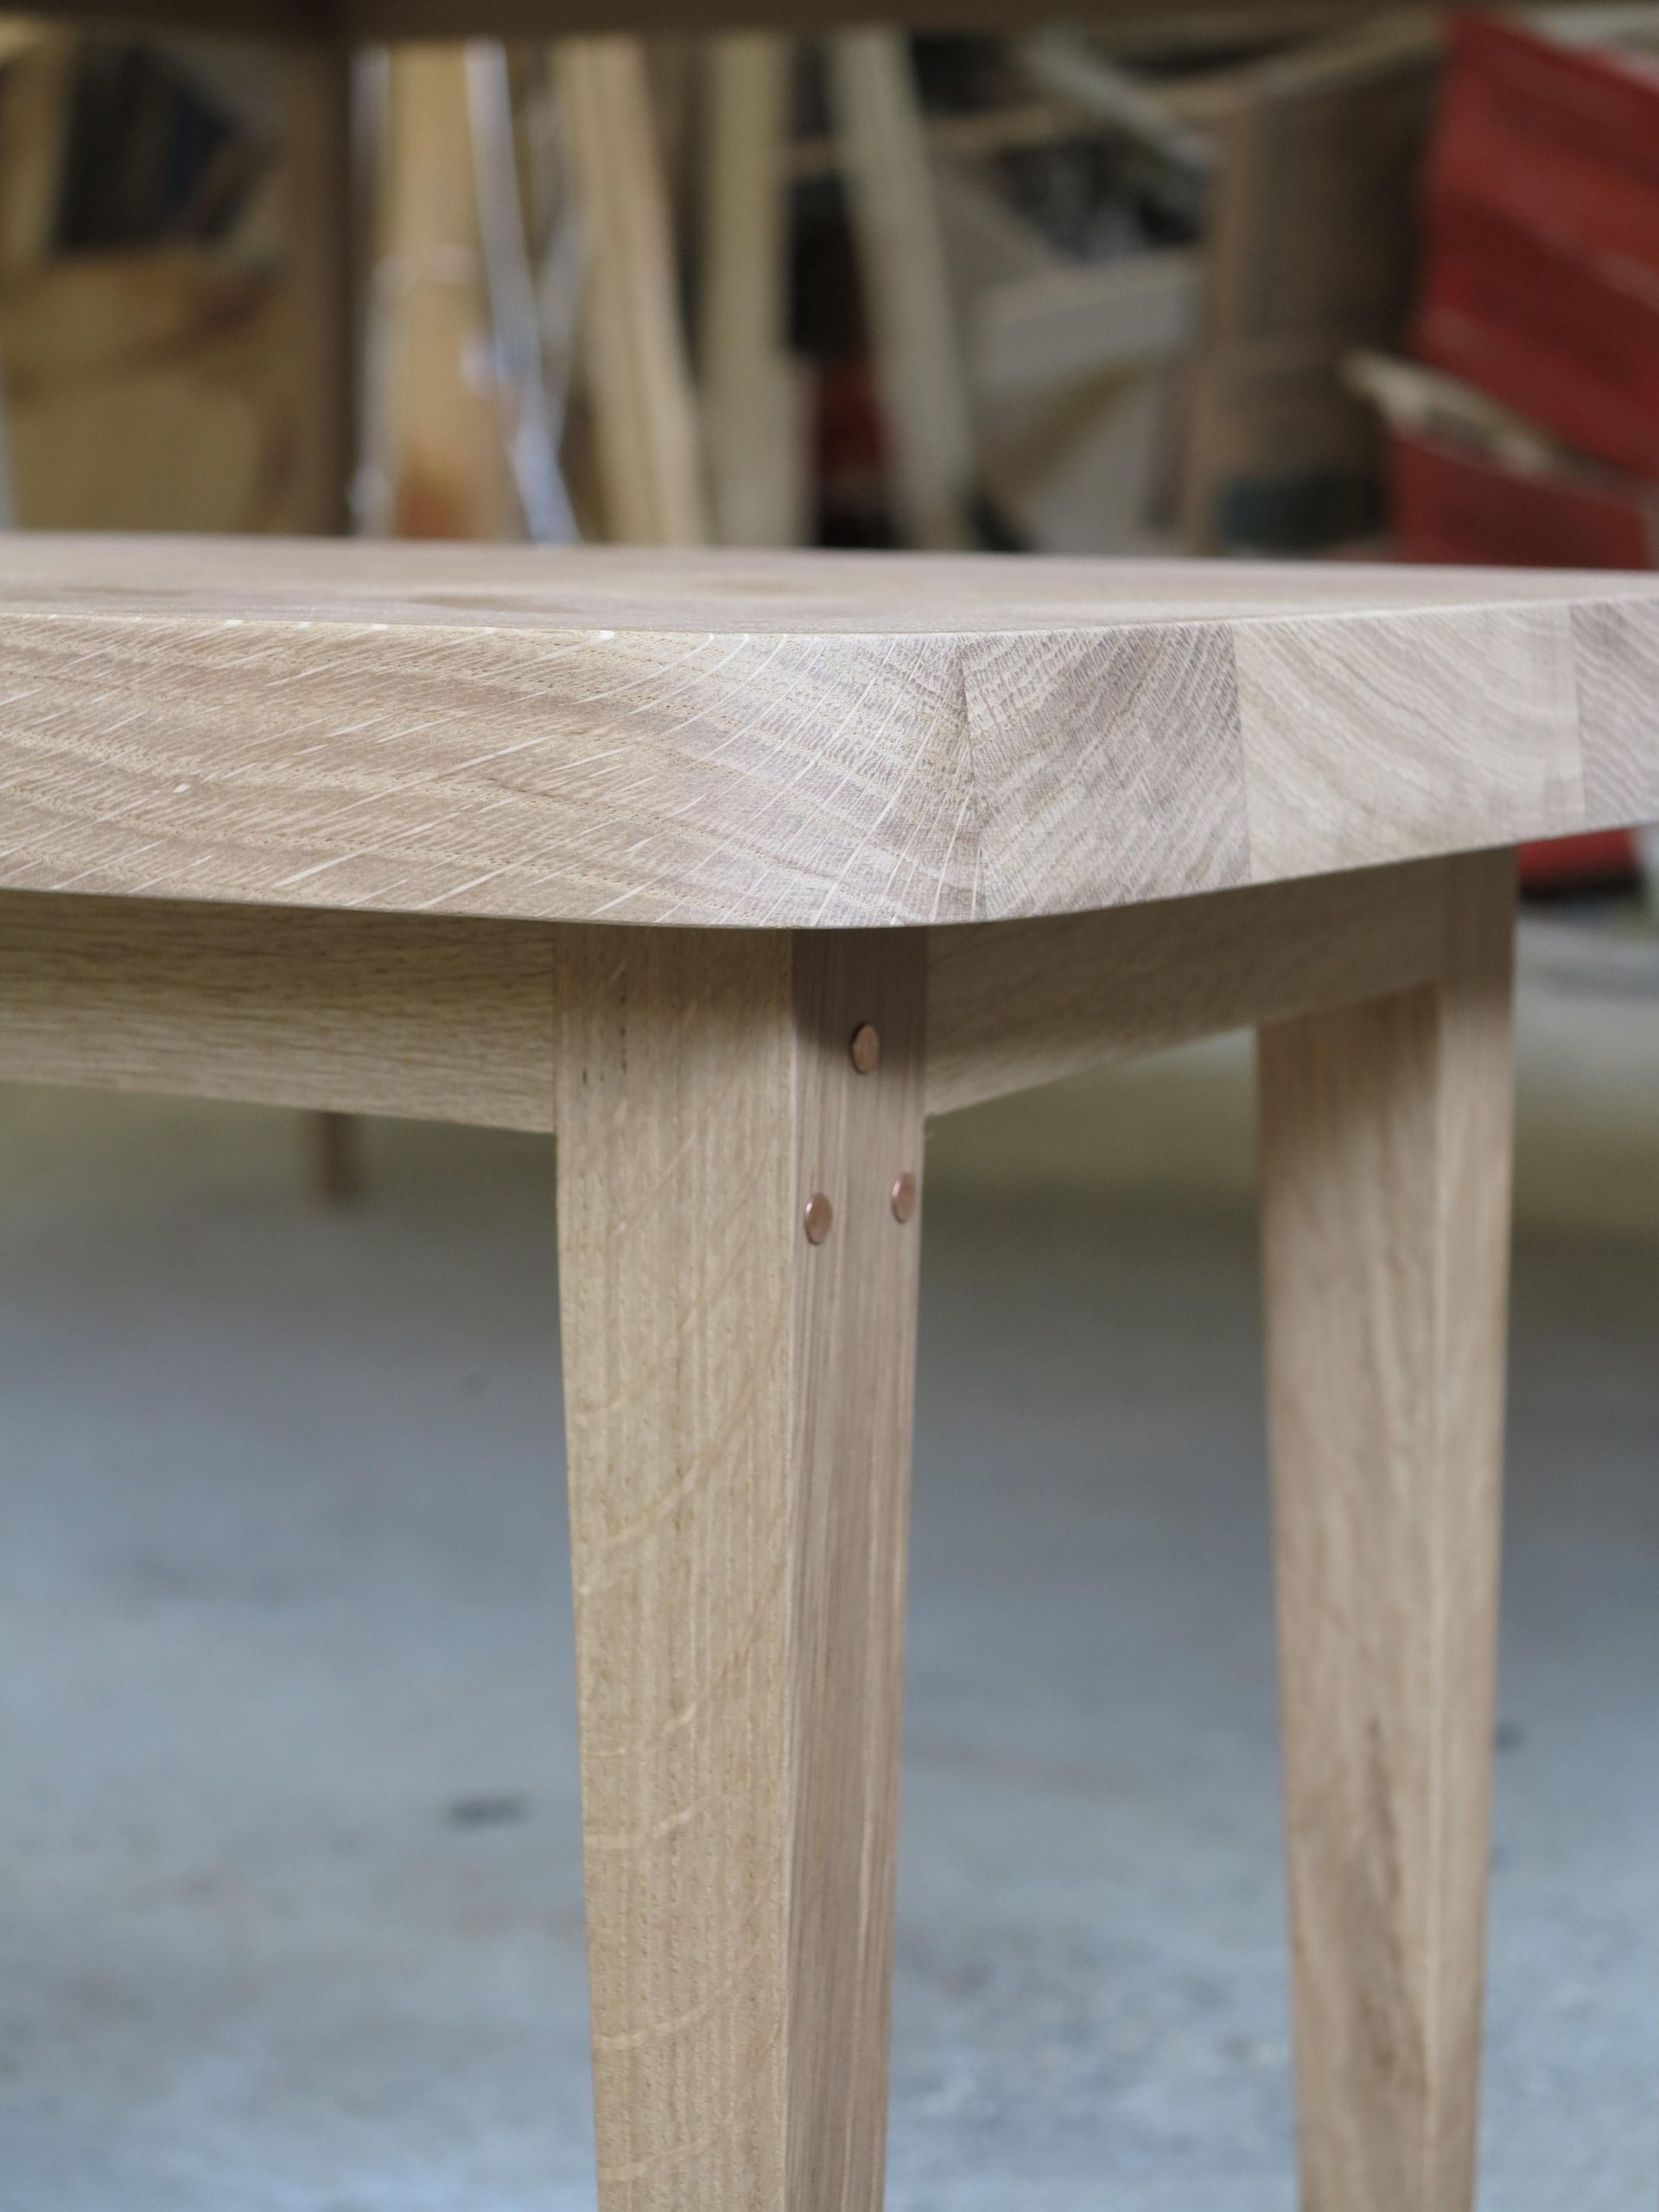 table en bois a rallonge design franc2a7ois rabot tables rallonge banc chane massif bois of table en bois a rallonge